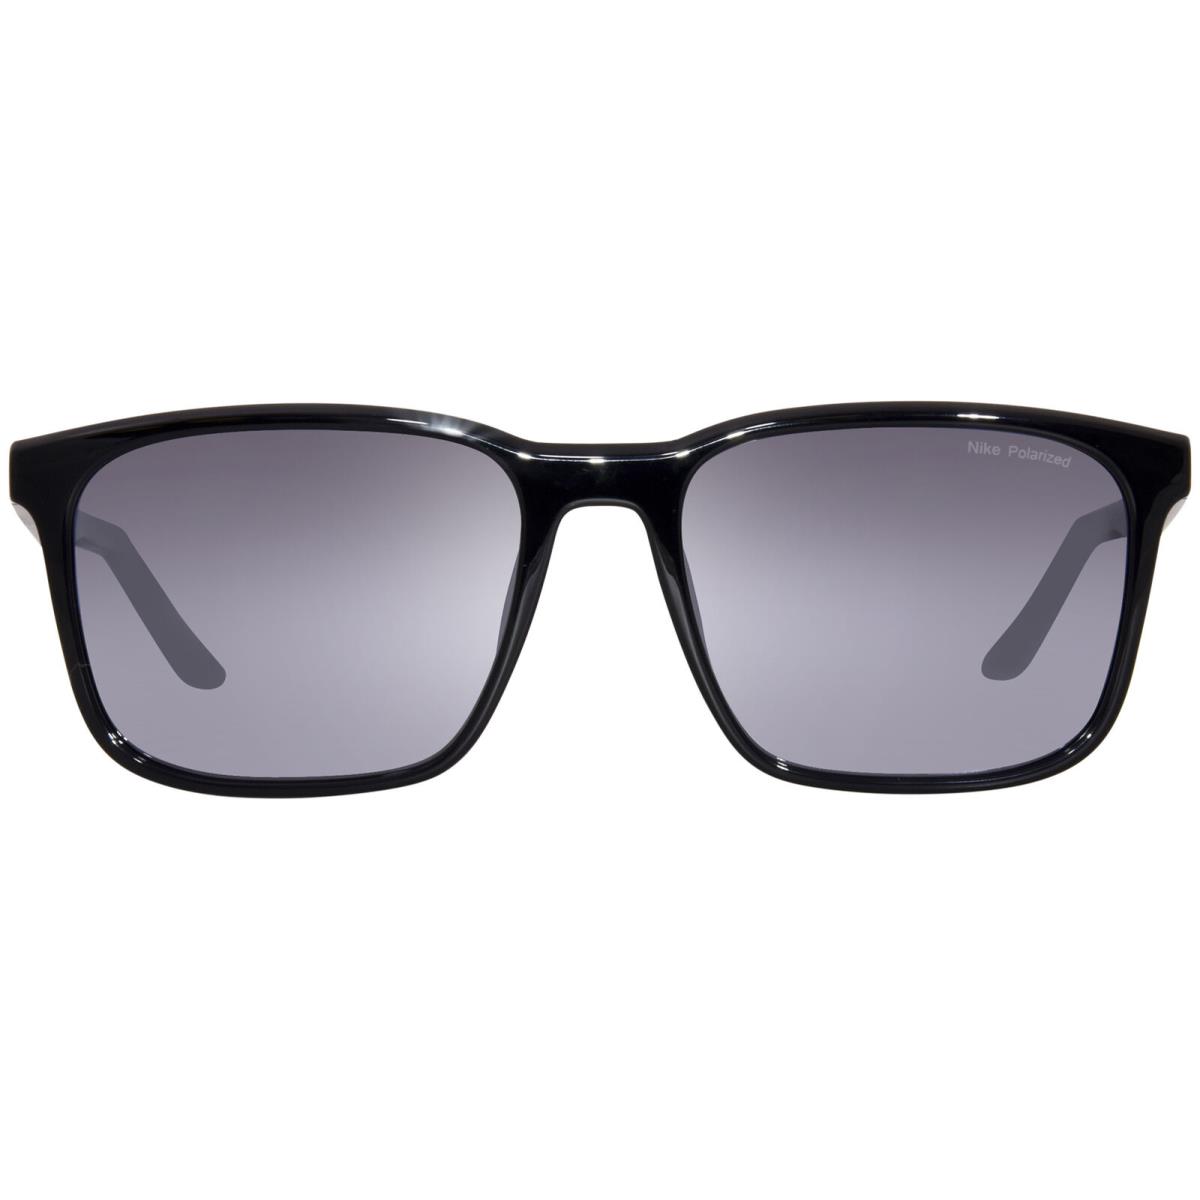 Nike Rave-p FD1849 011 Sunglasses Black/polarized Silver Flash Square Shape 57mm - Frame: Black, Lens: Silver